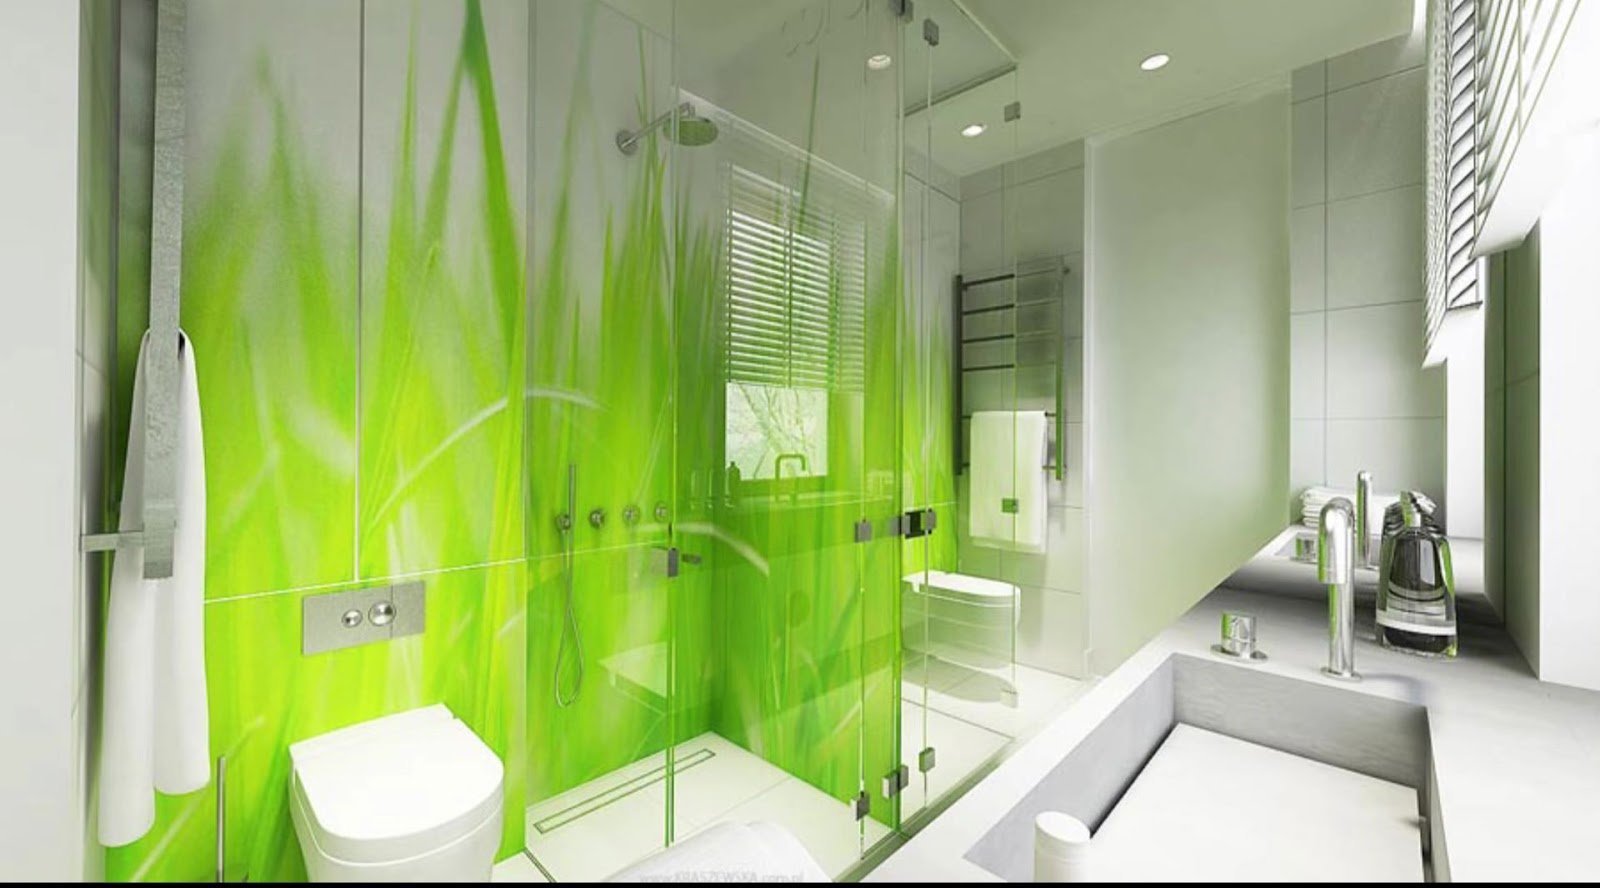 Туалет цвет зеленый. Ванная комната. Ванная комната в салатовых тонах. Ванная в зеленых тонах. Бело зеленая ванная комната.